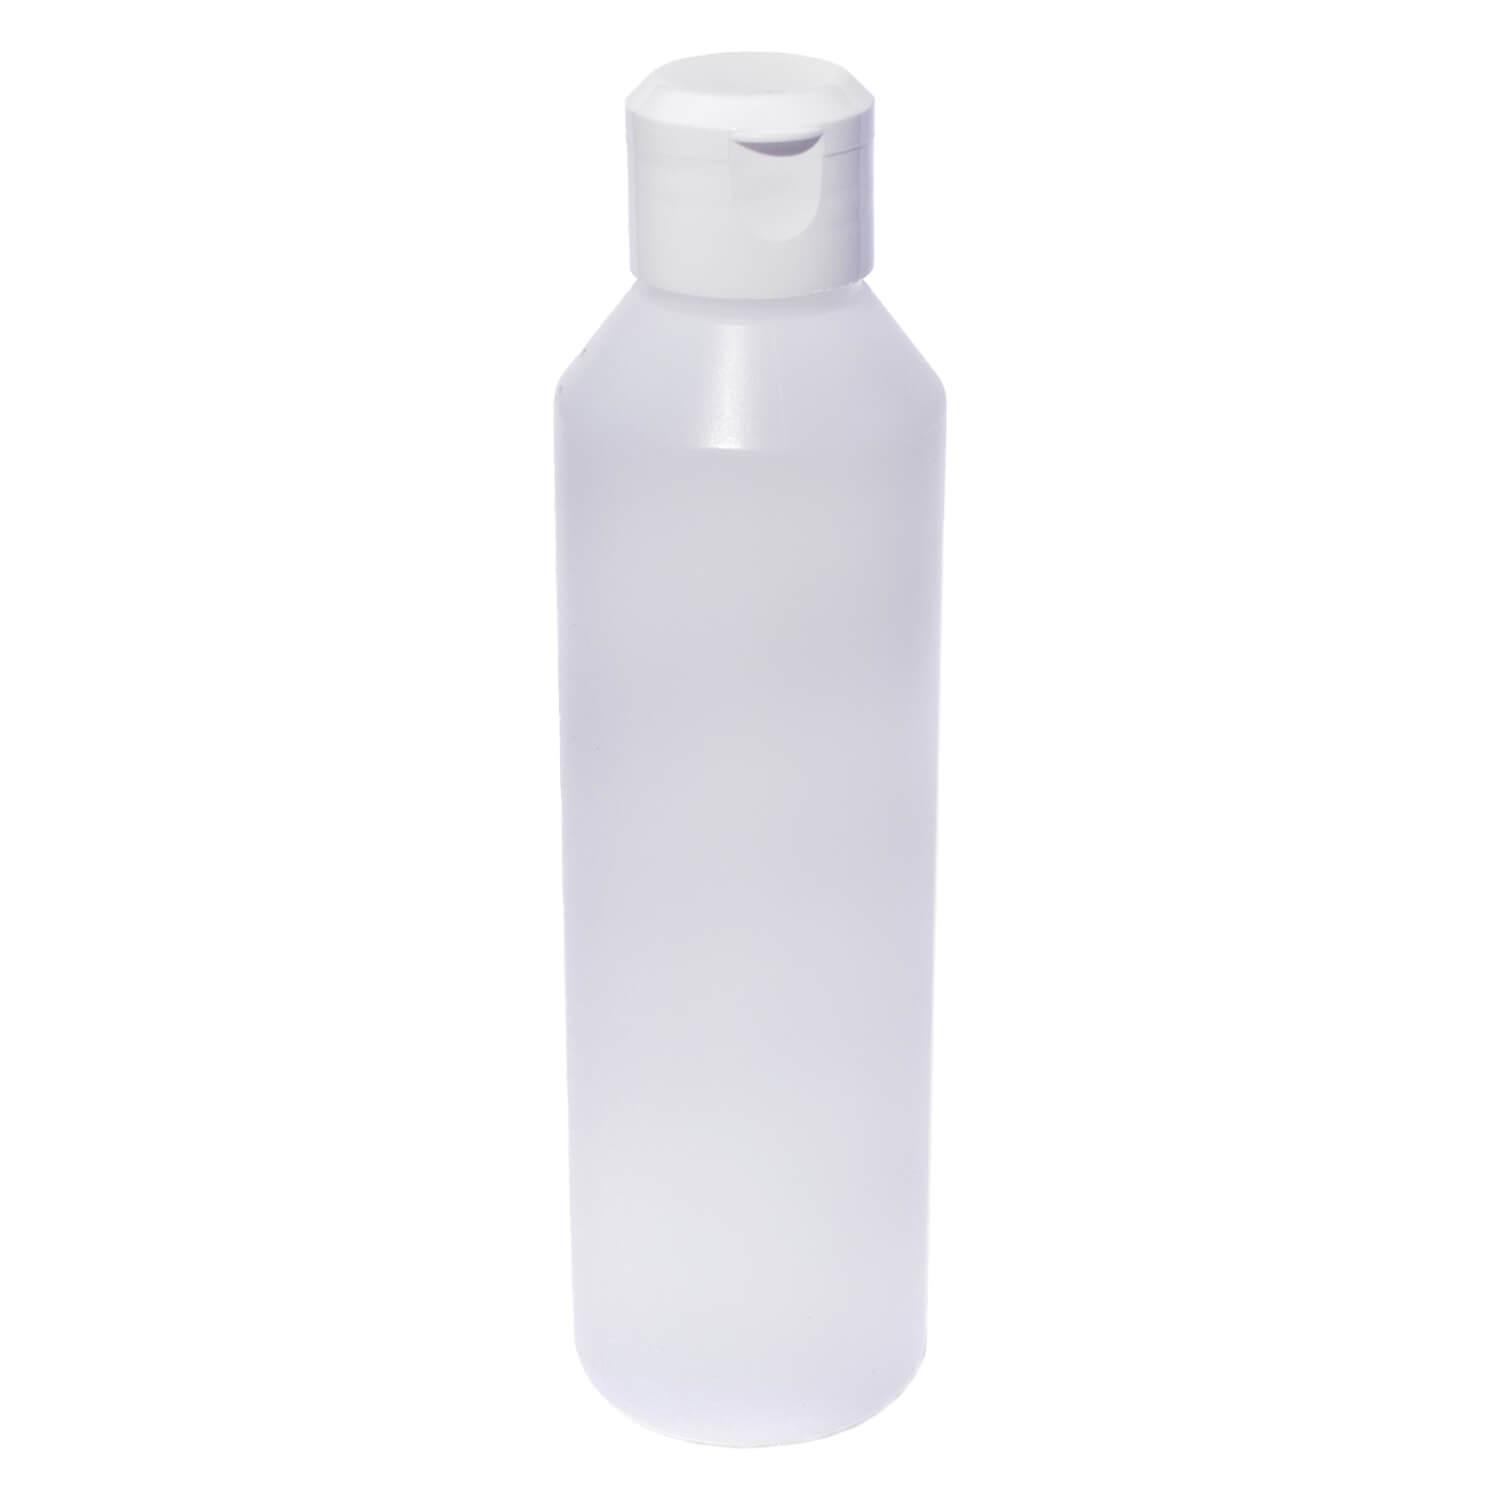 jolu - Bioplastic bottle